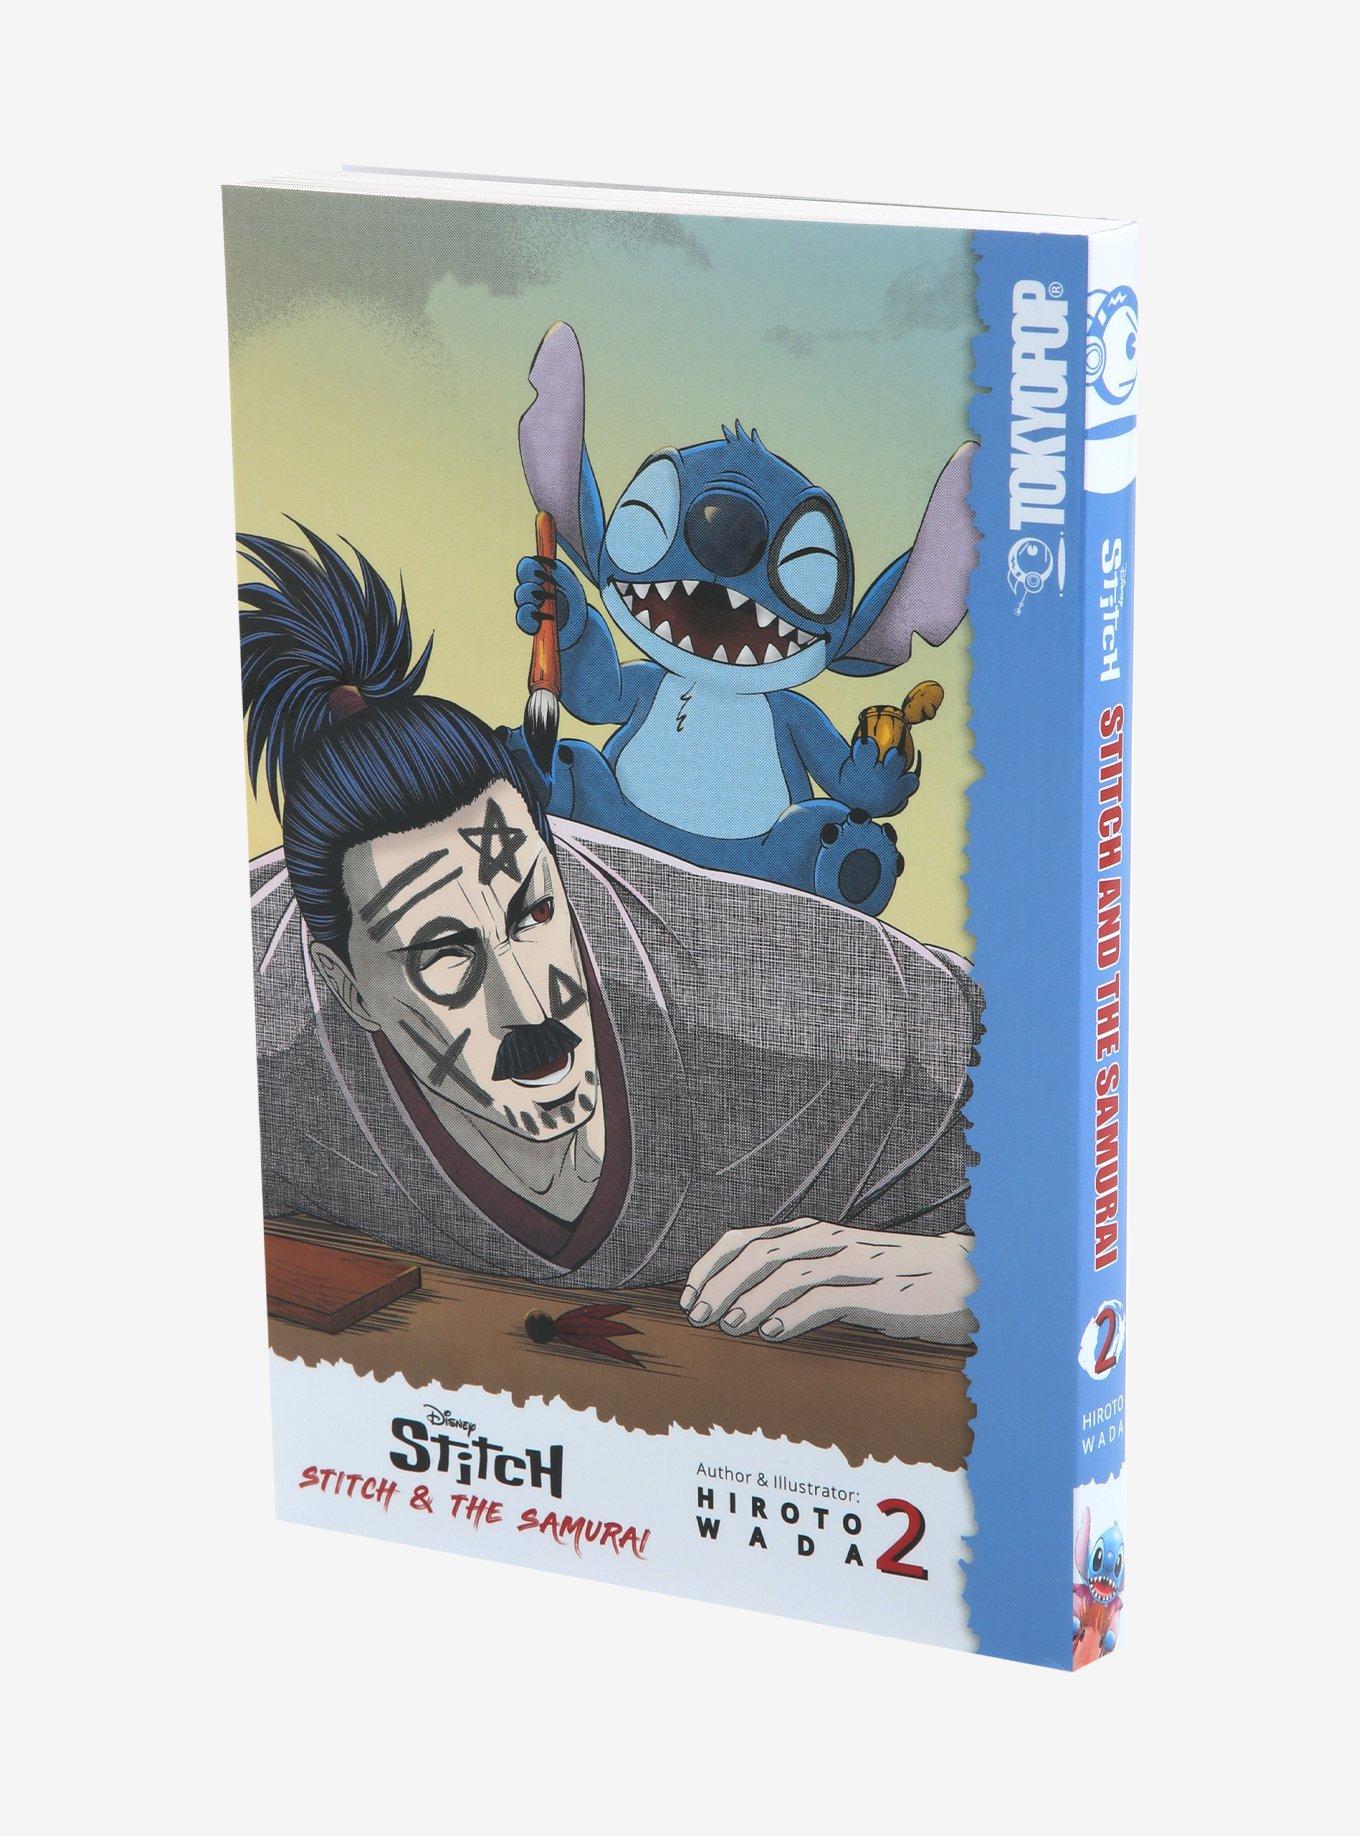 Afro Samurai Vol.1-2 Boxed Set (Afro Samurai, 1-2)